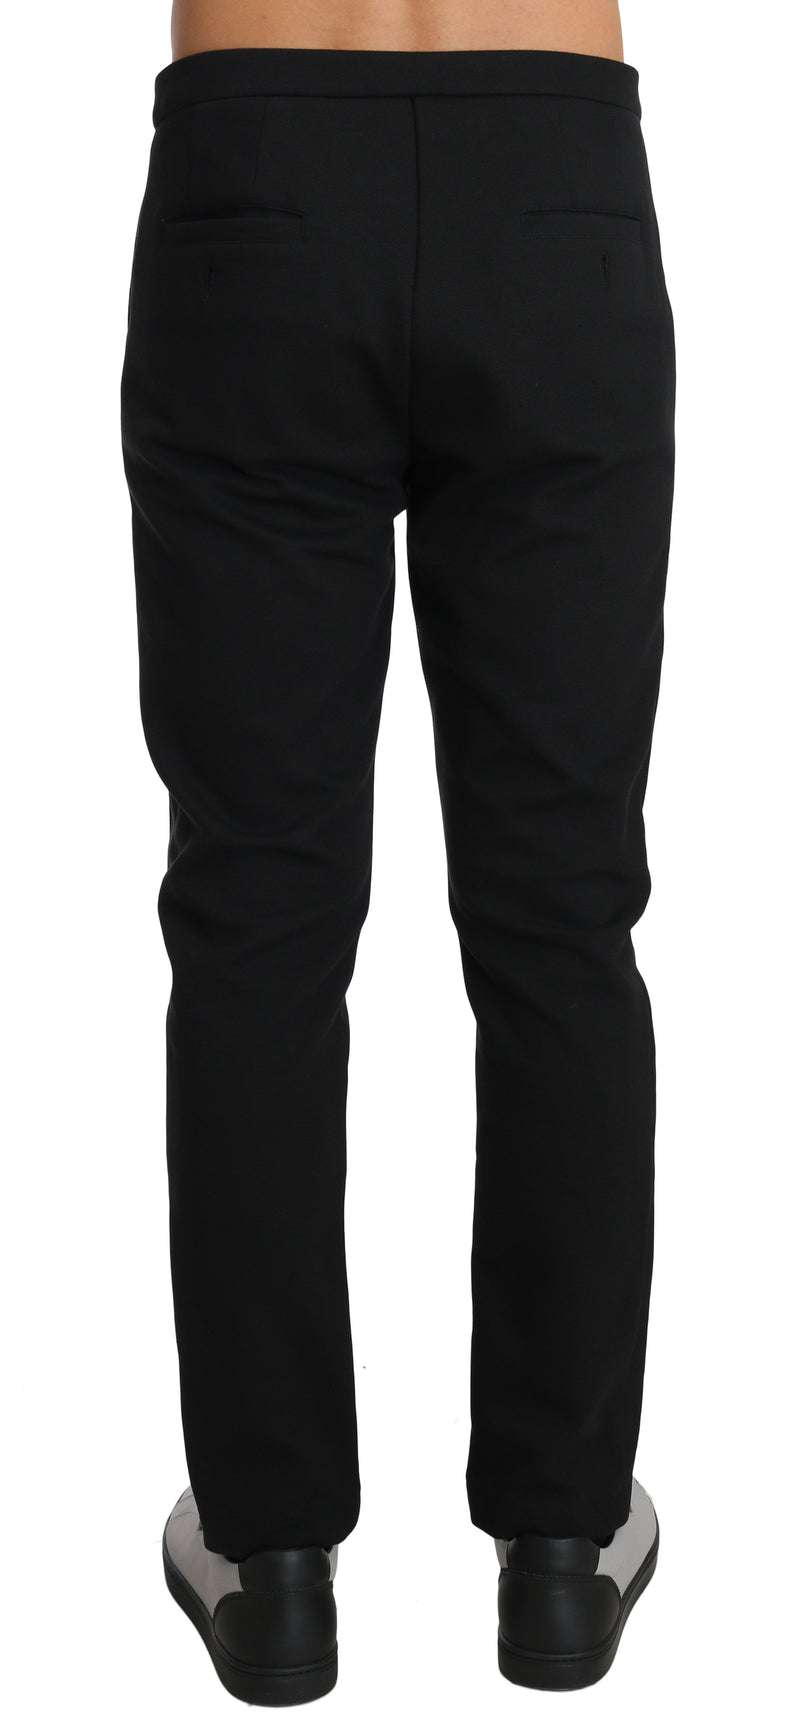 Black Cotton Logo Dress Formal Trousers